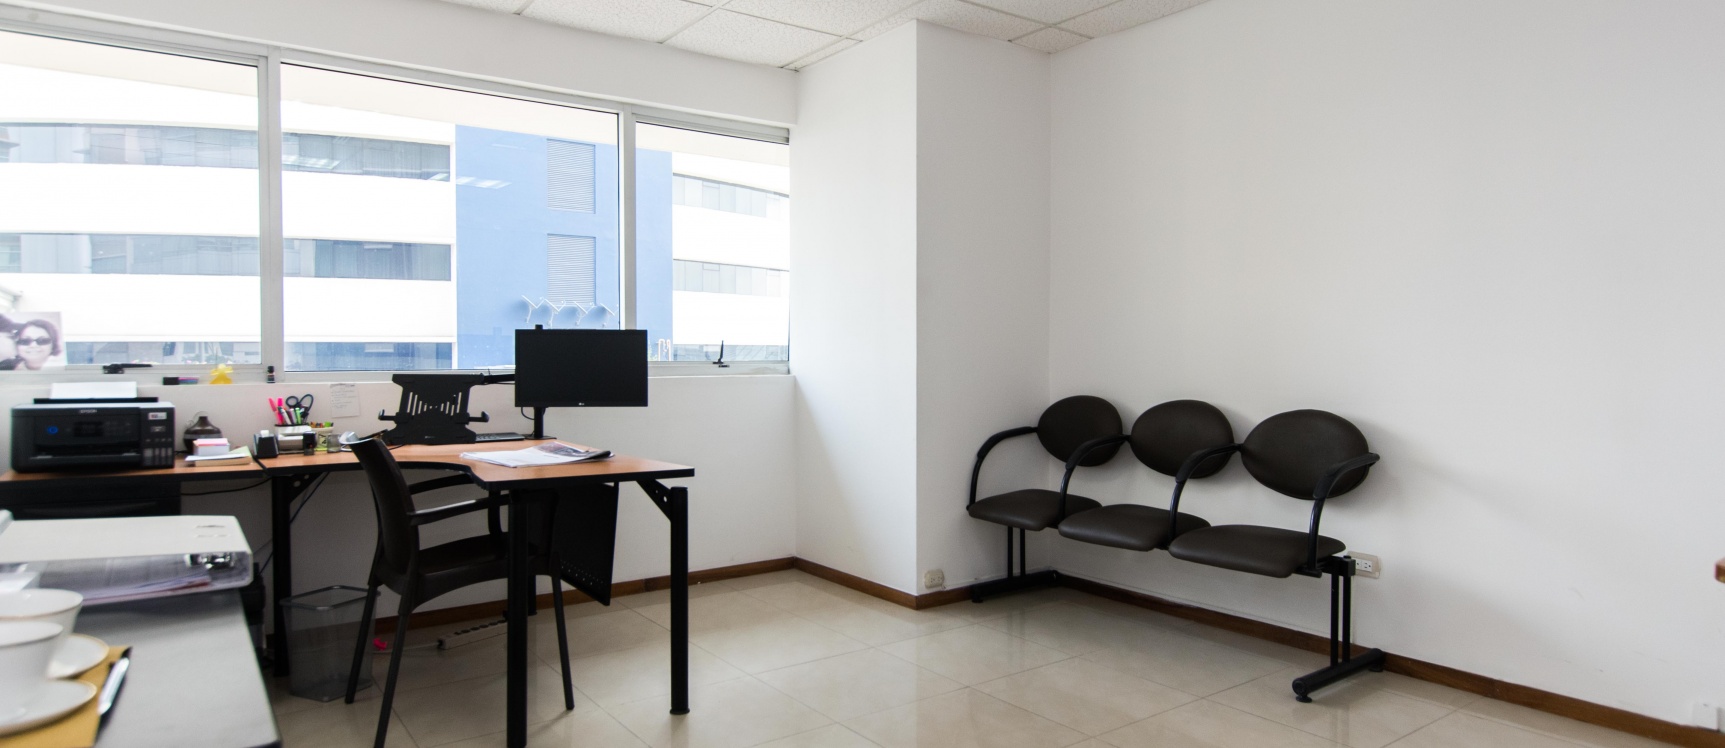 GeoBienes - Oficina amoblada en alquiler ubicada en el Edificio Trade Building - Plusvalia Guayaquil Casas de venta y alquiler Inmobiliaria Ecuador